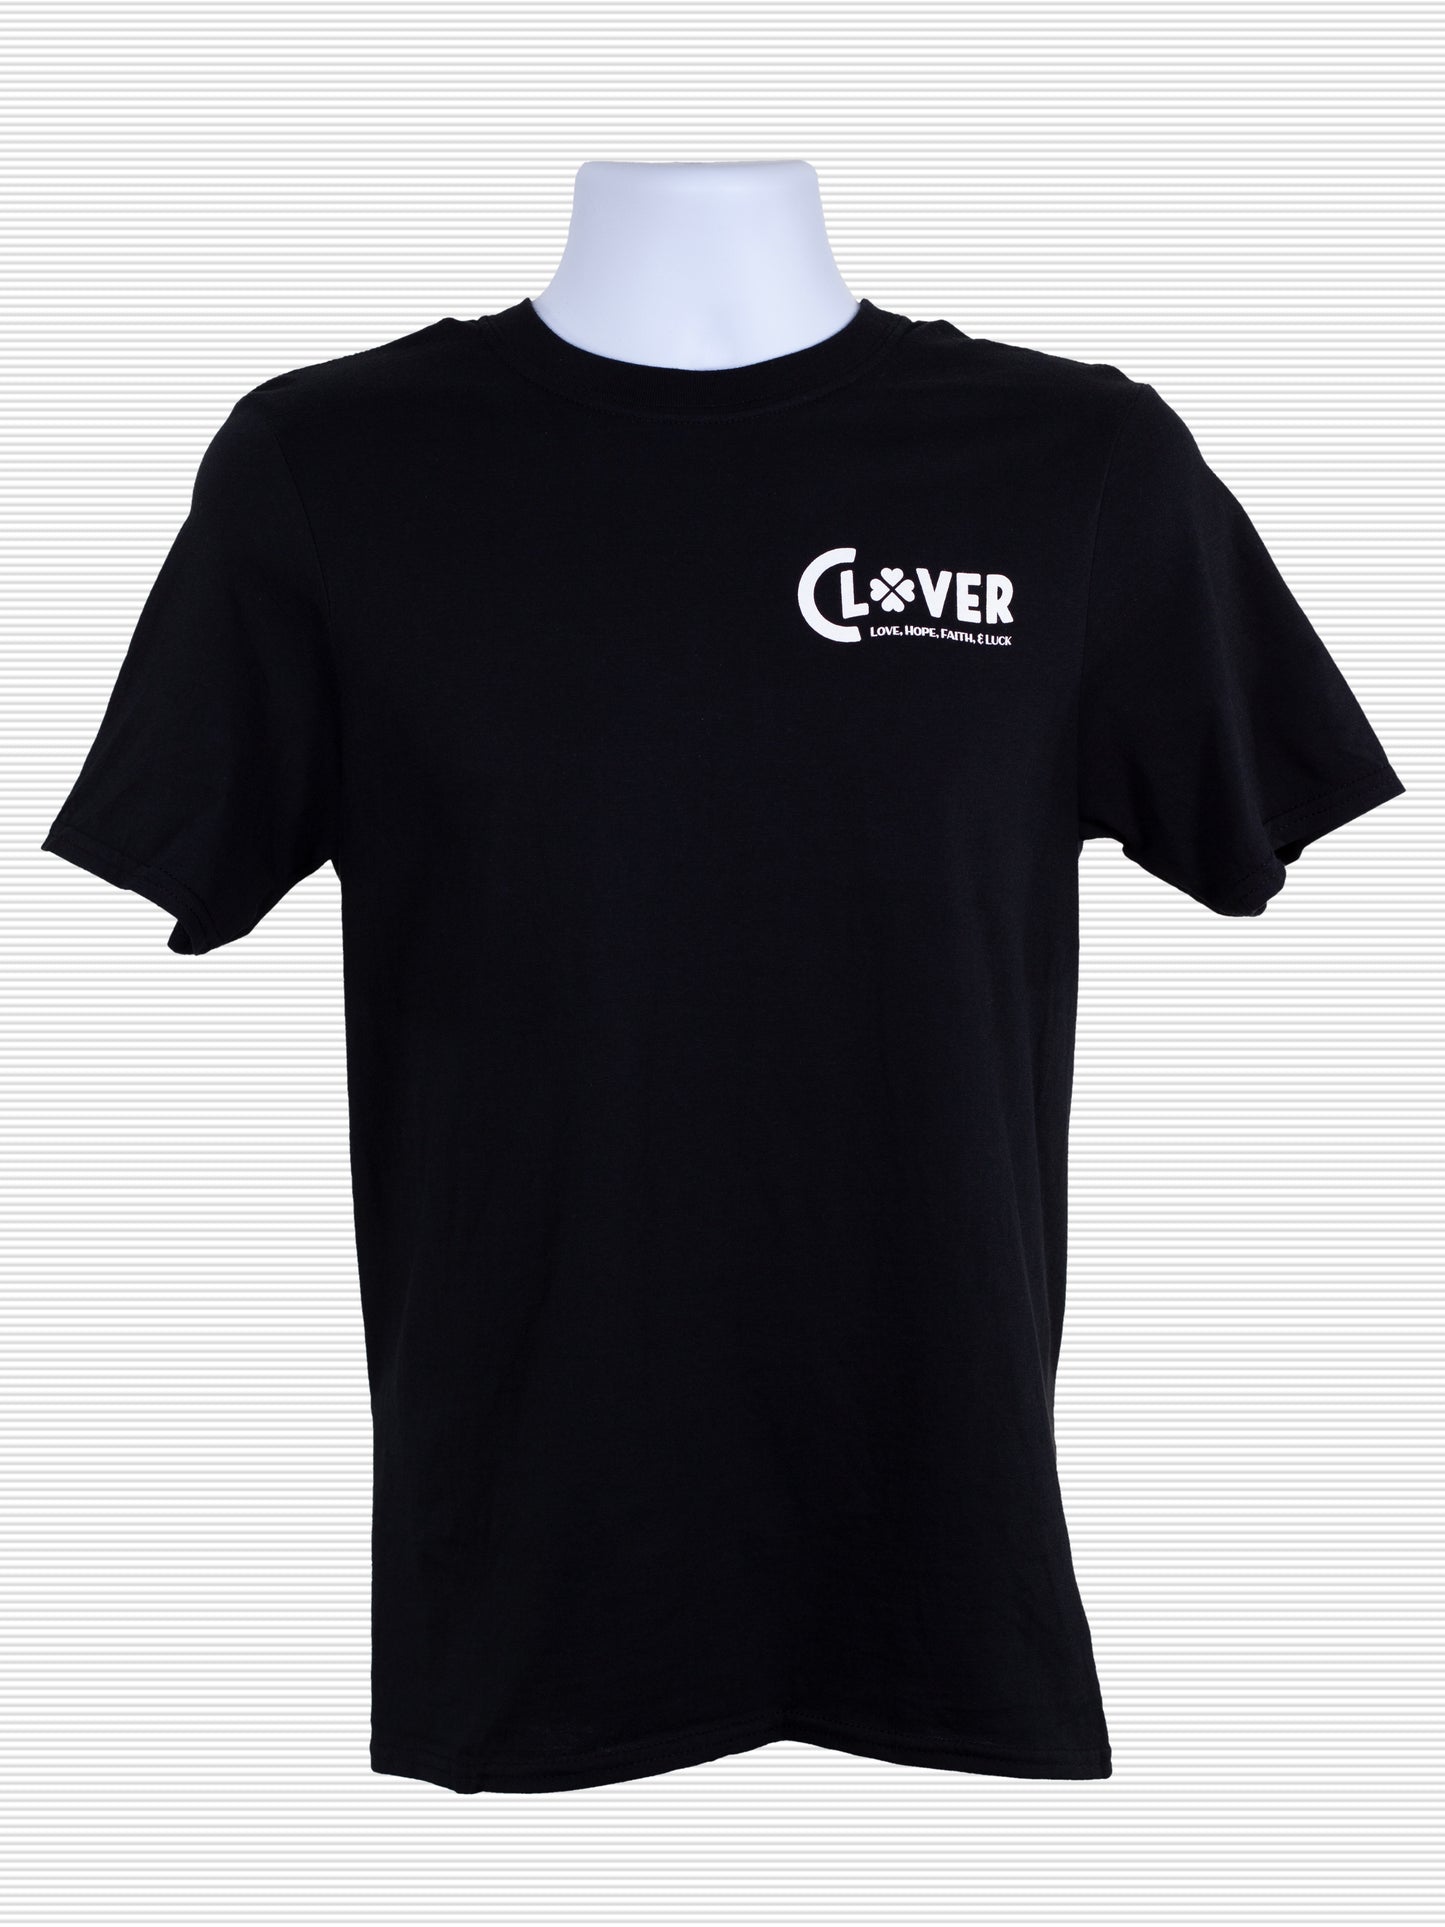 OR3O Clover T-Shirt